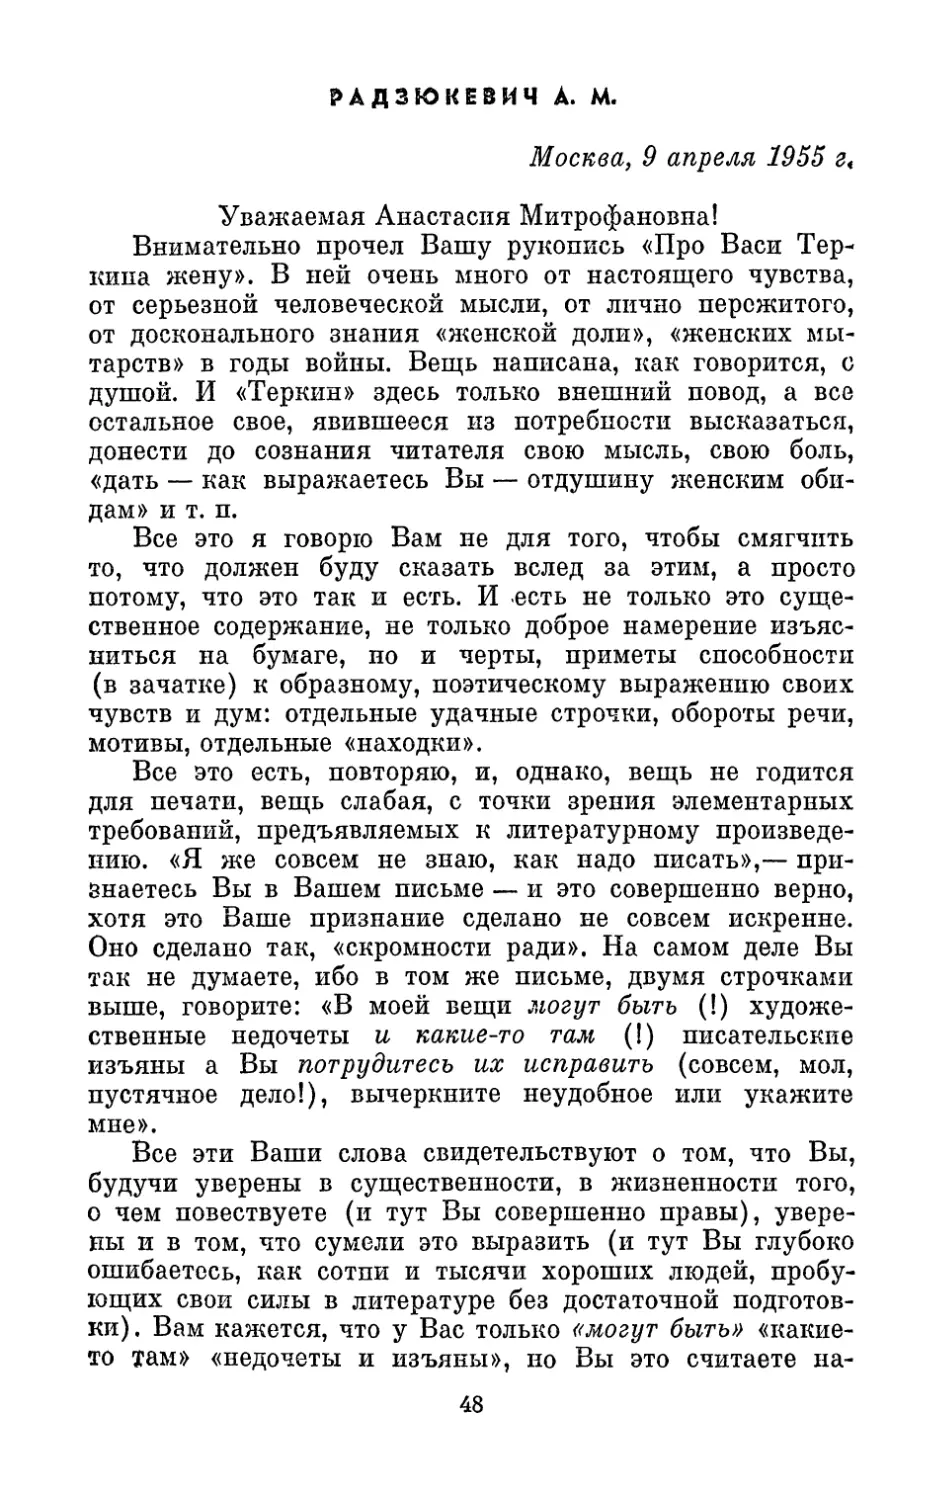 Радзюкевич А. М., 9 апреля 1955 г.